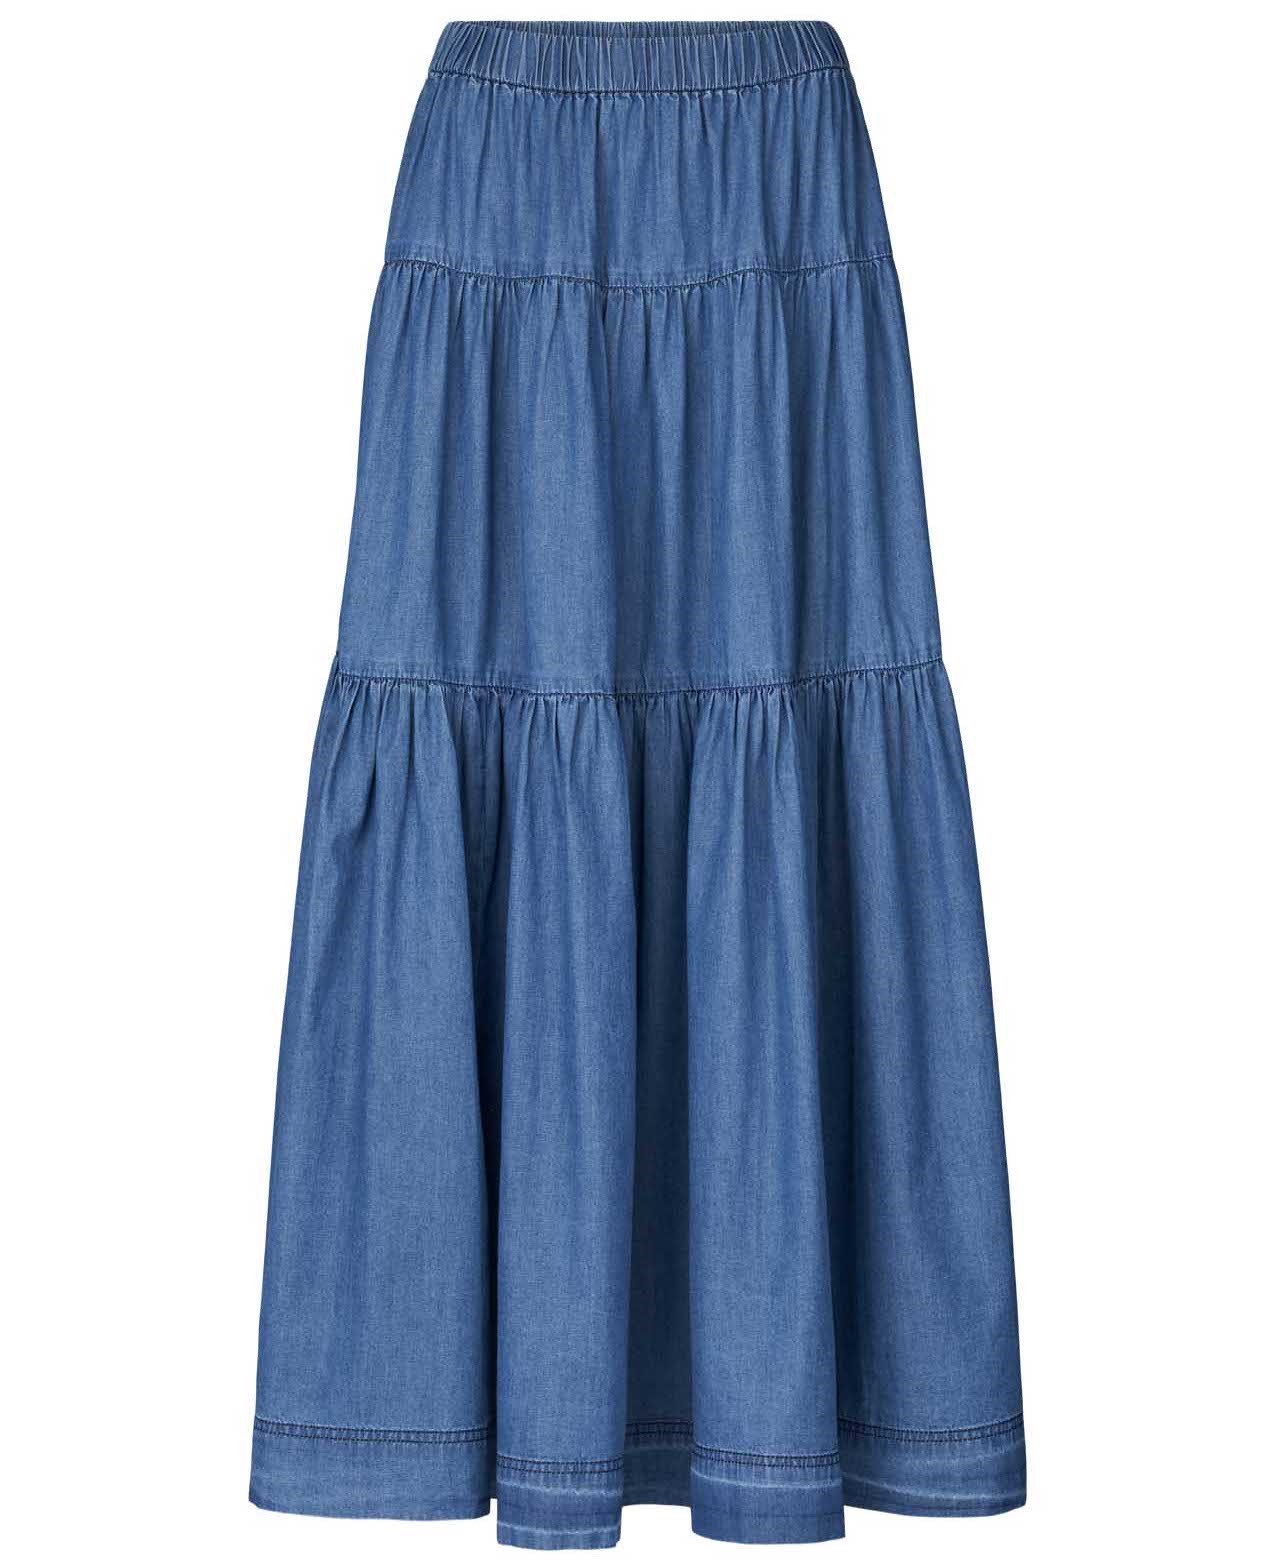 Lollys Laundry - Sunset Skirt Blue